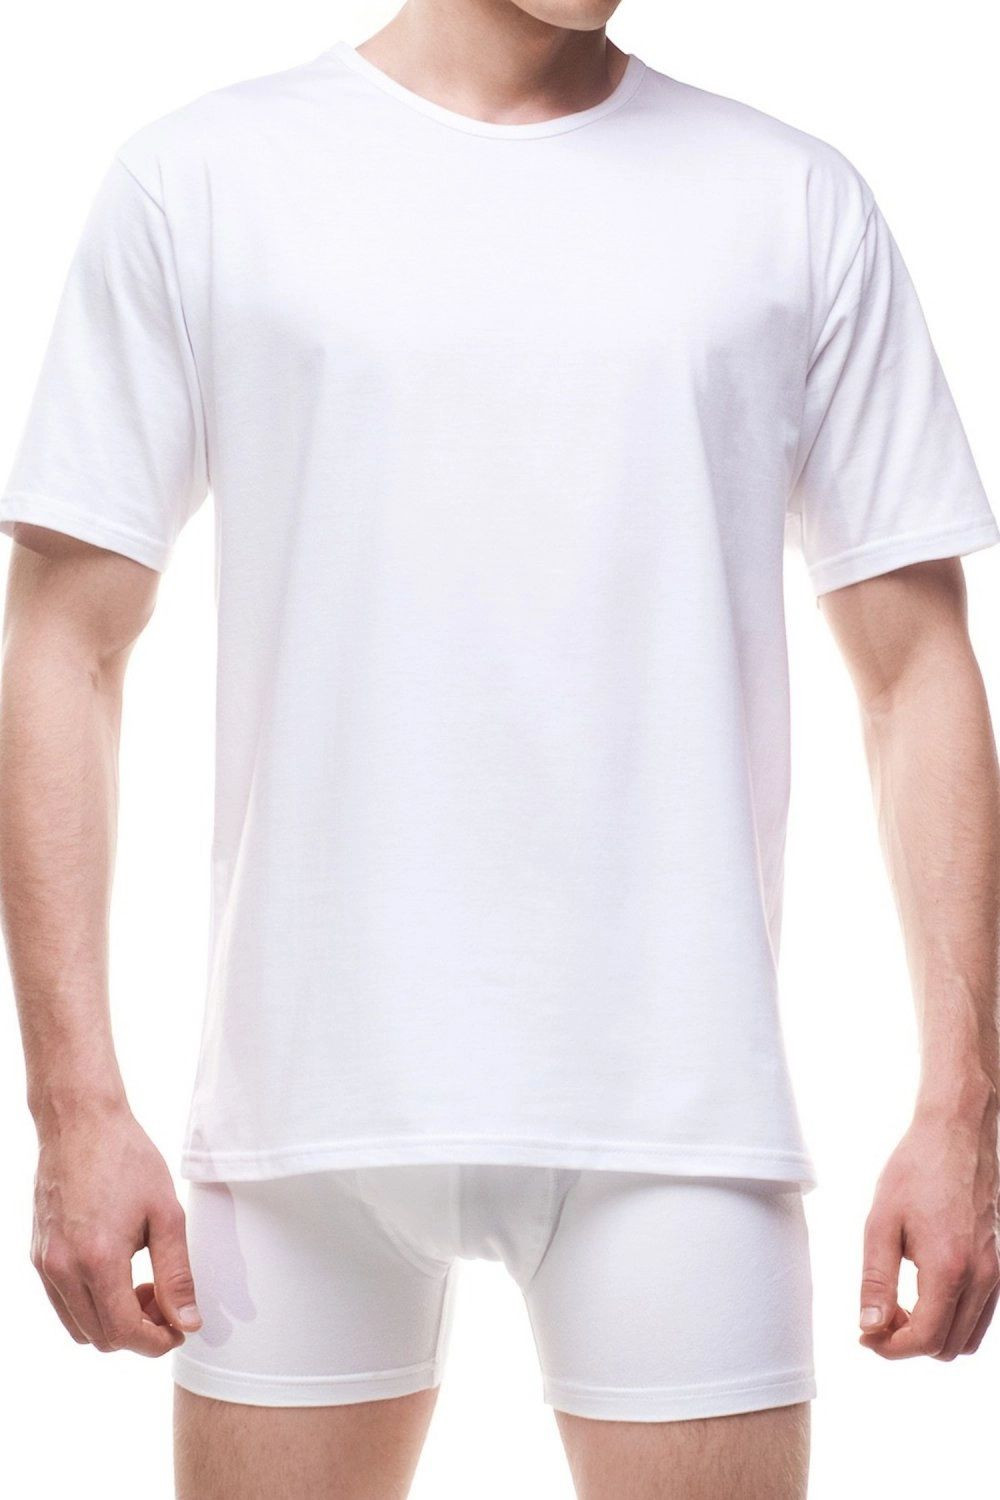 Pánské tričko 202 Authentic new white - CORNETTE Bílá S